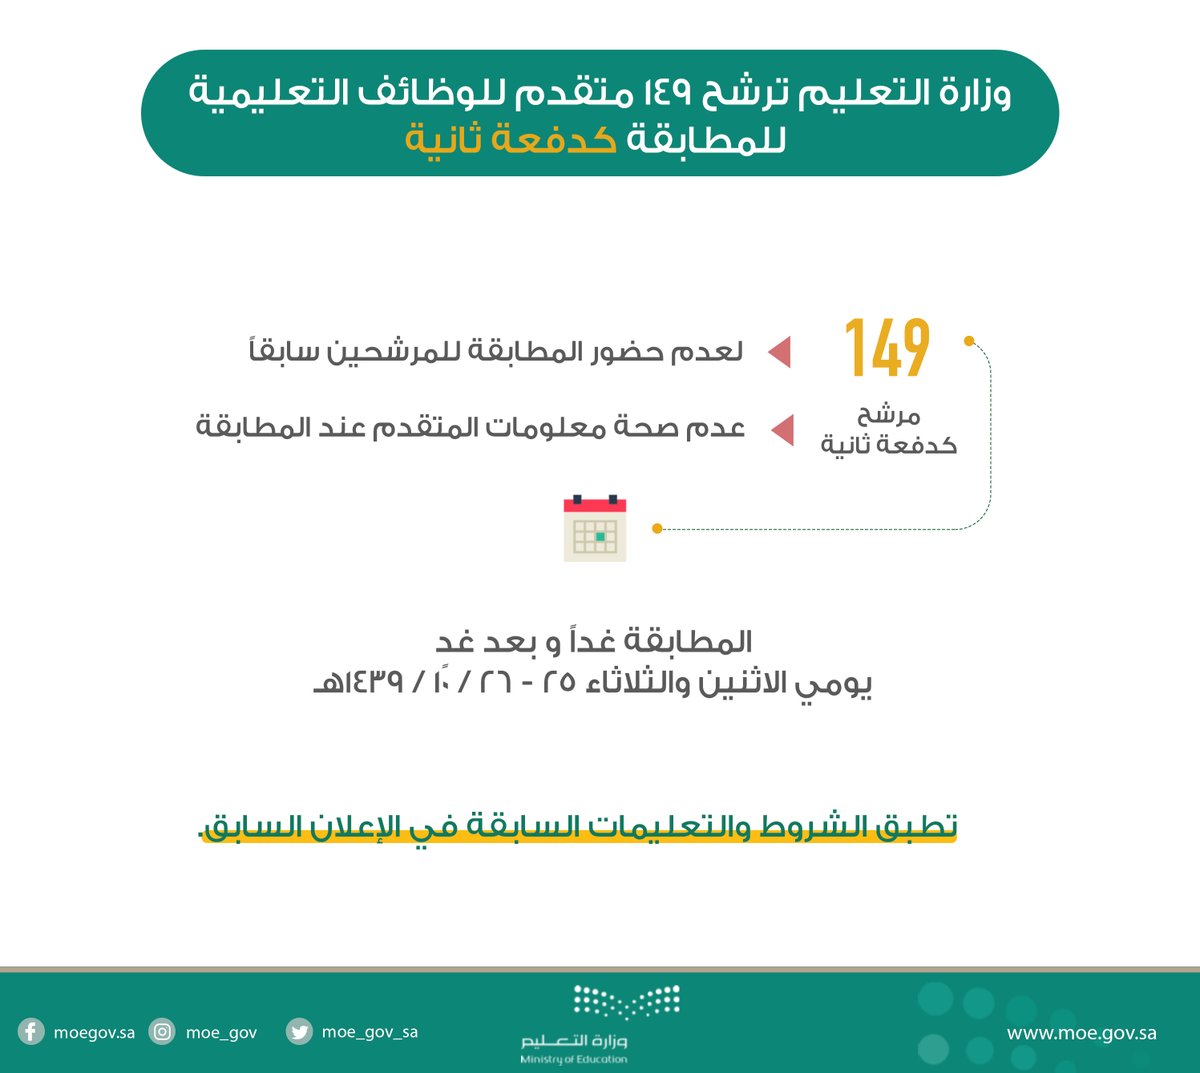 بالأسماء .. وزارة التعليم تدعو 149 مرشحًا على الوظائف التعليمية للمطابقة